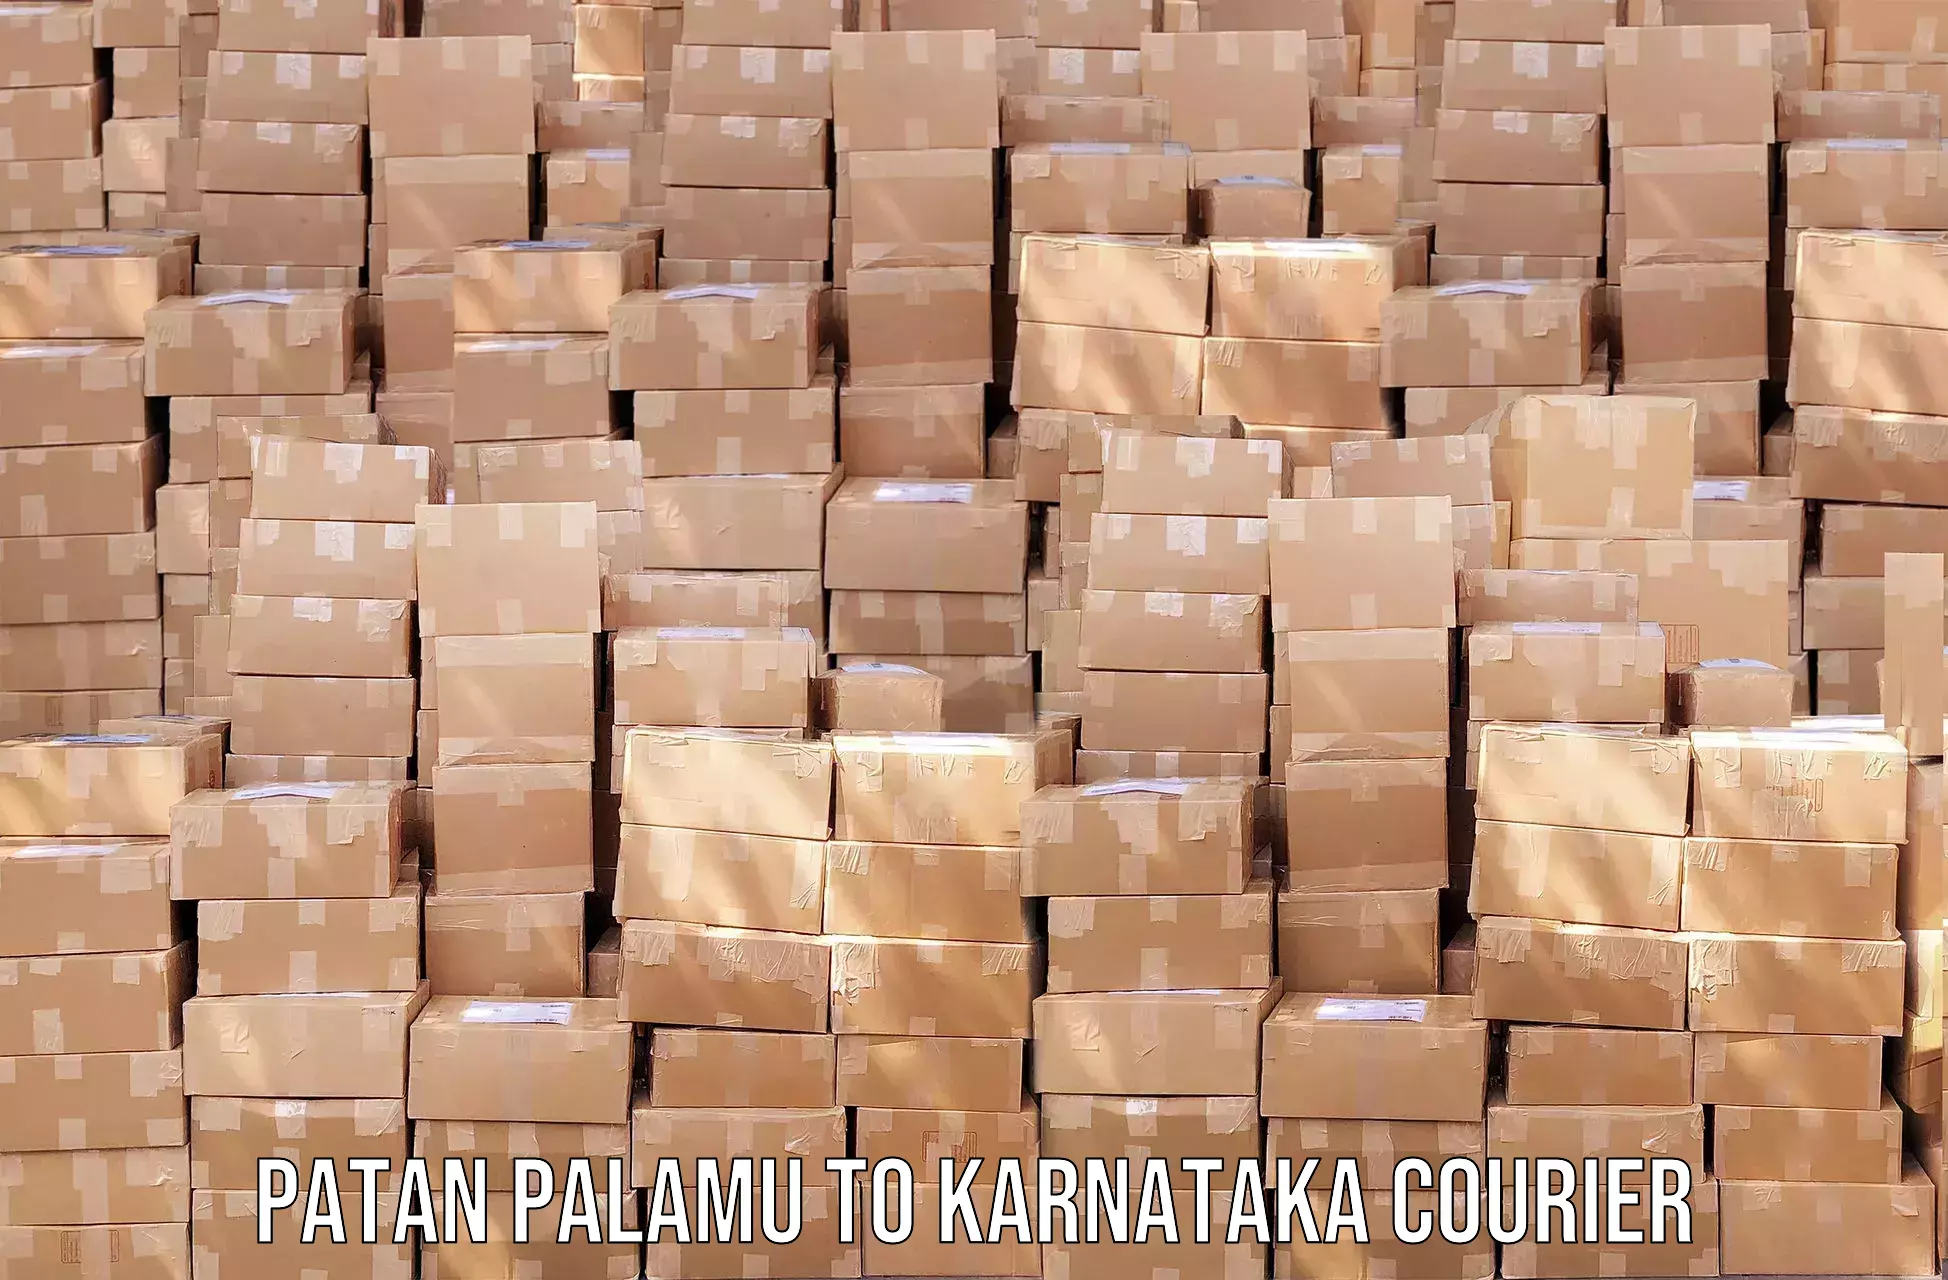 Courier service partnerships Patan Palamu to Heggadadevankote